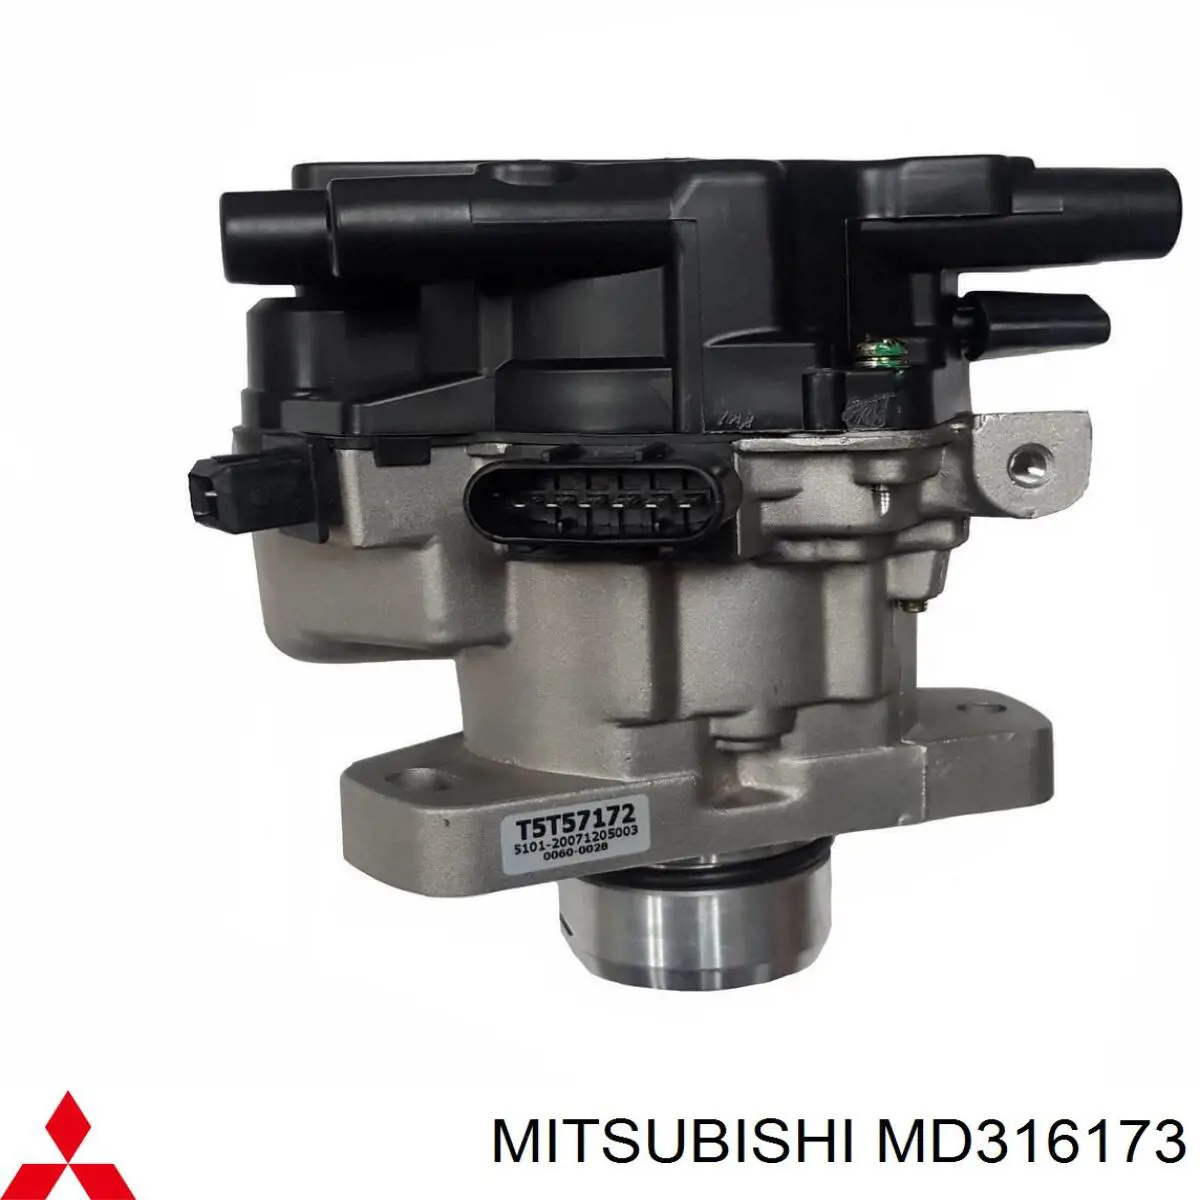 MD316173 Mitsubishi distribuidor de ignição (distribuidor)